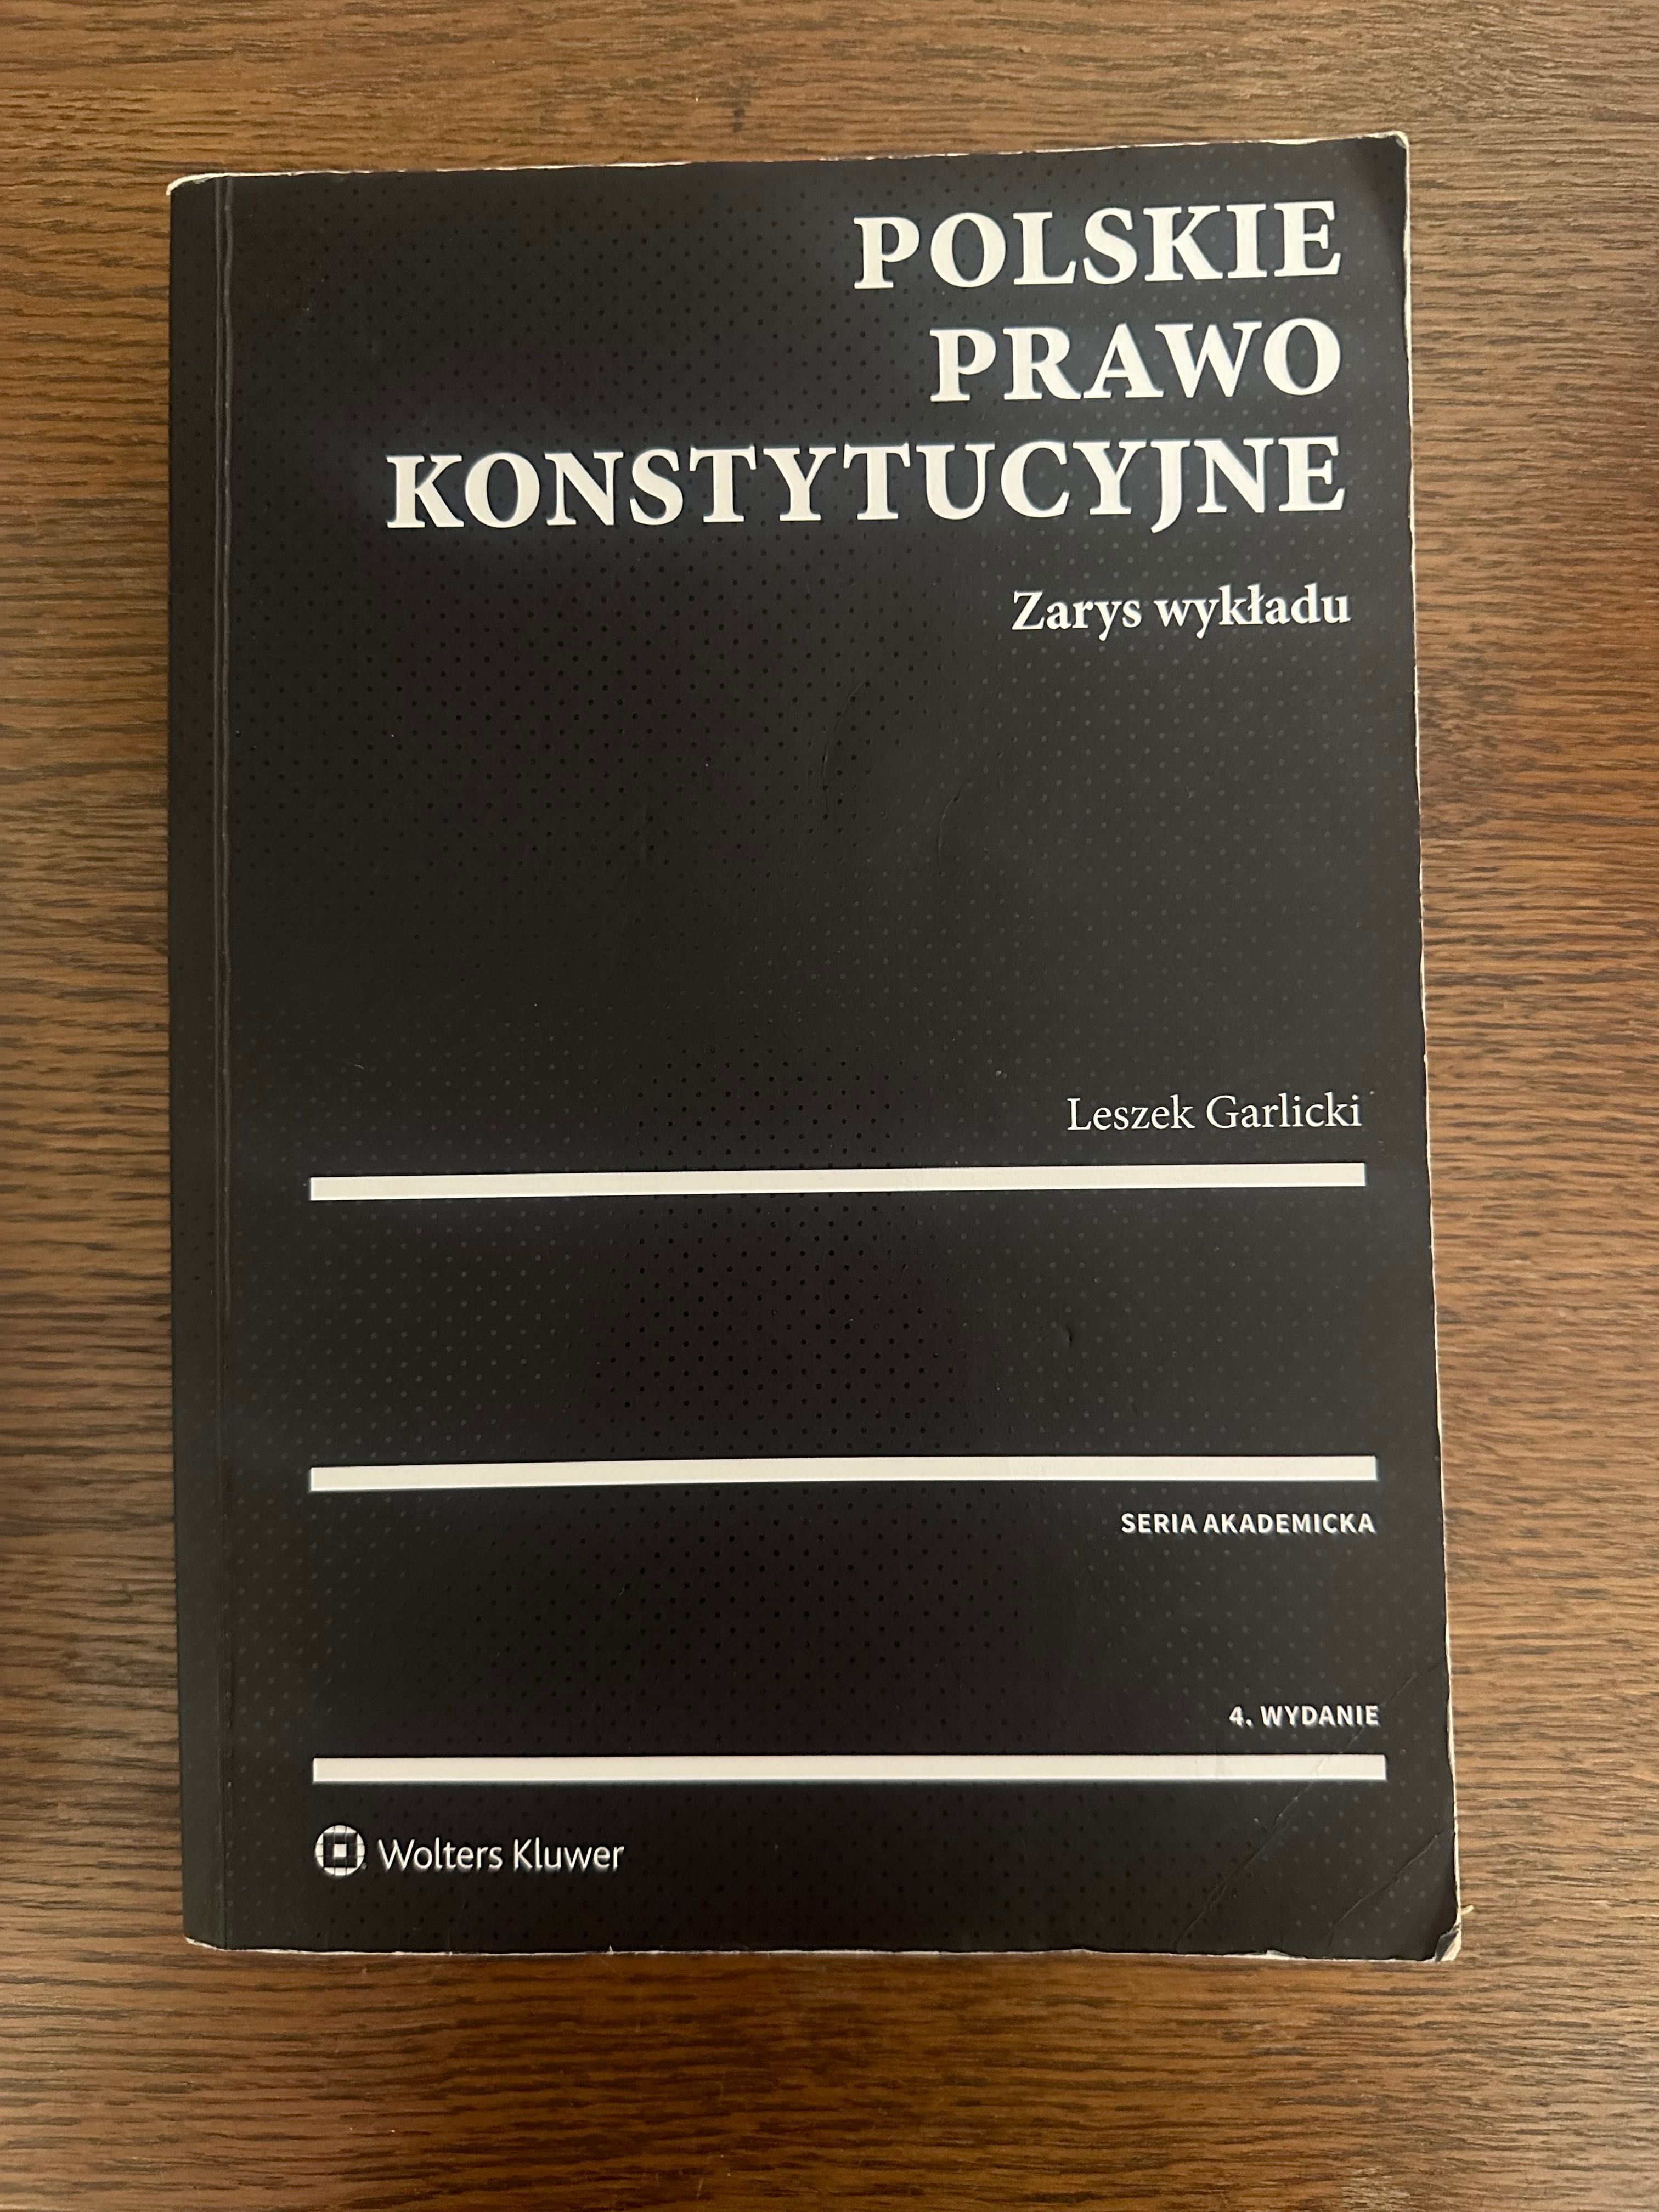 Polskie prawo konstytucyjne - zarys wykładu. Garlicki